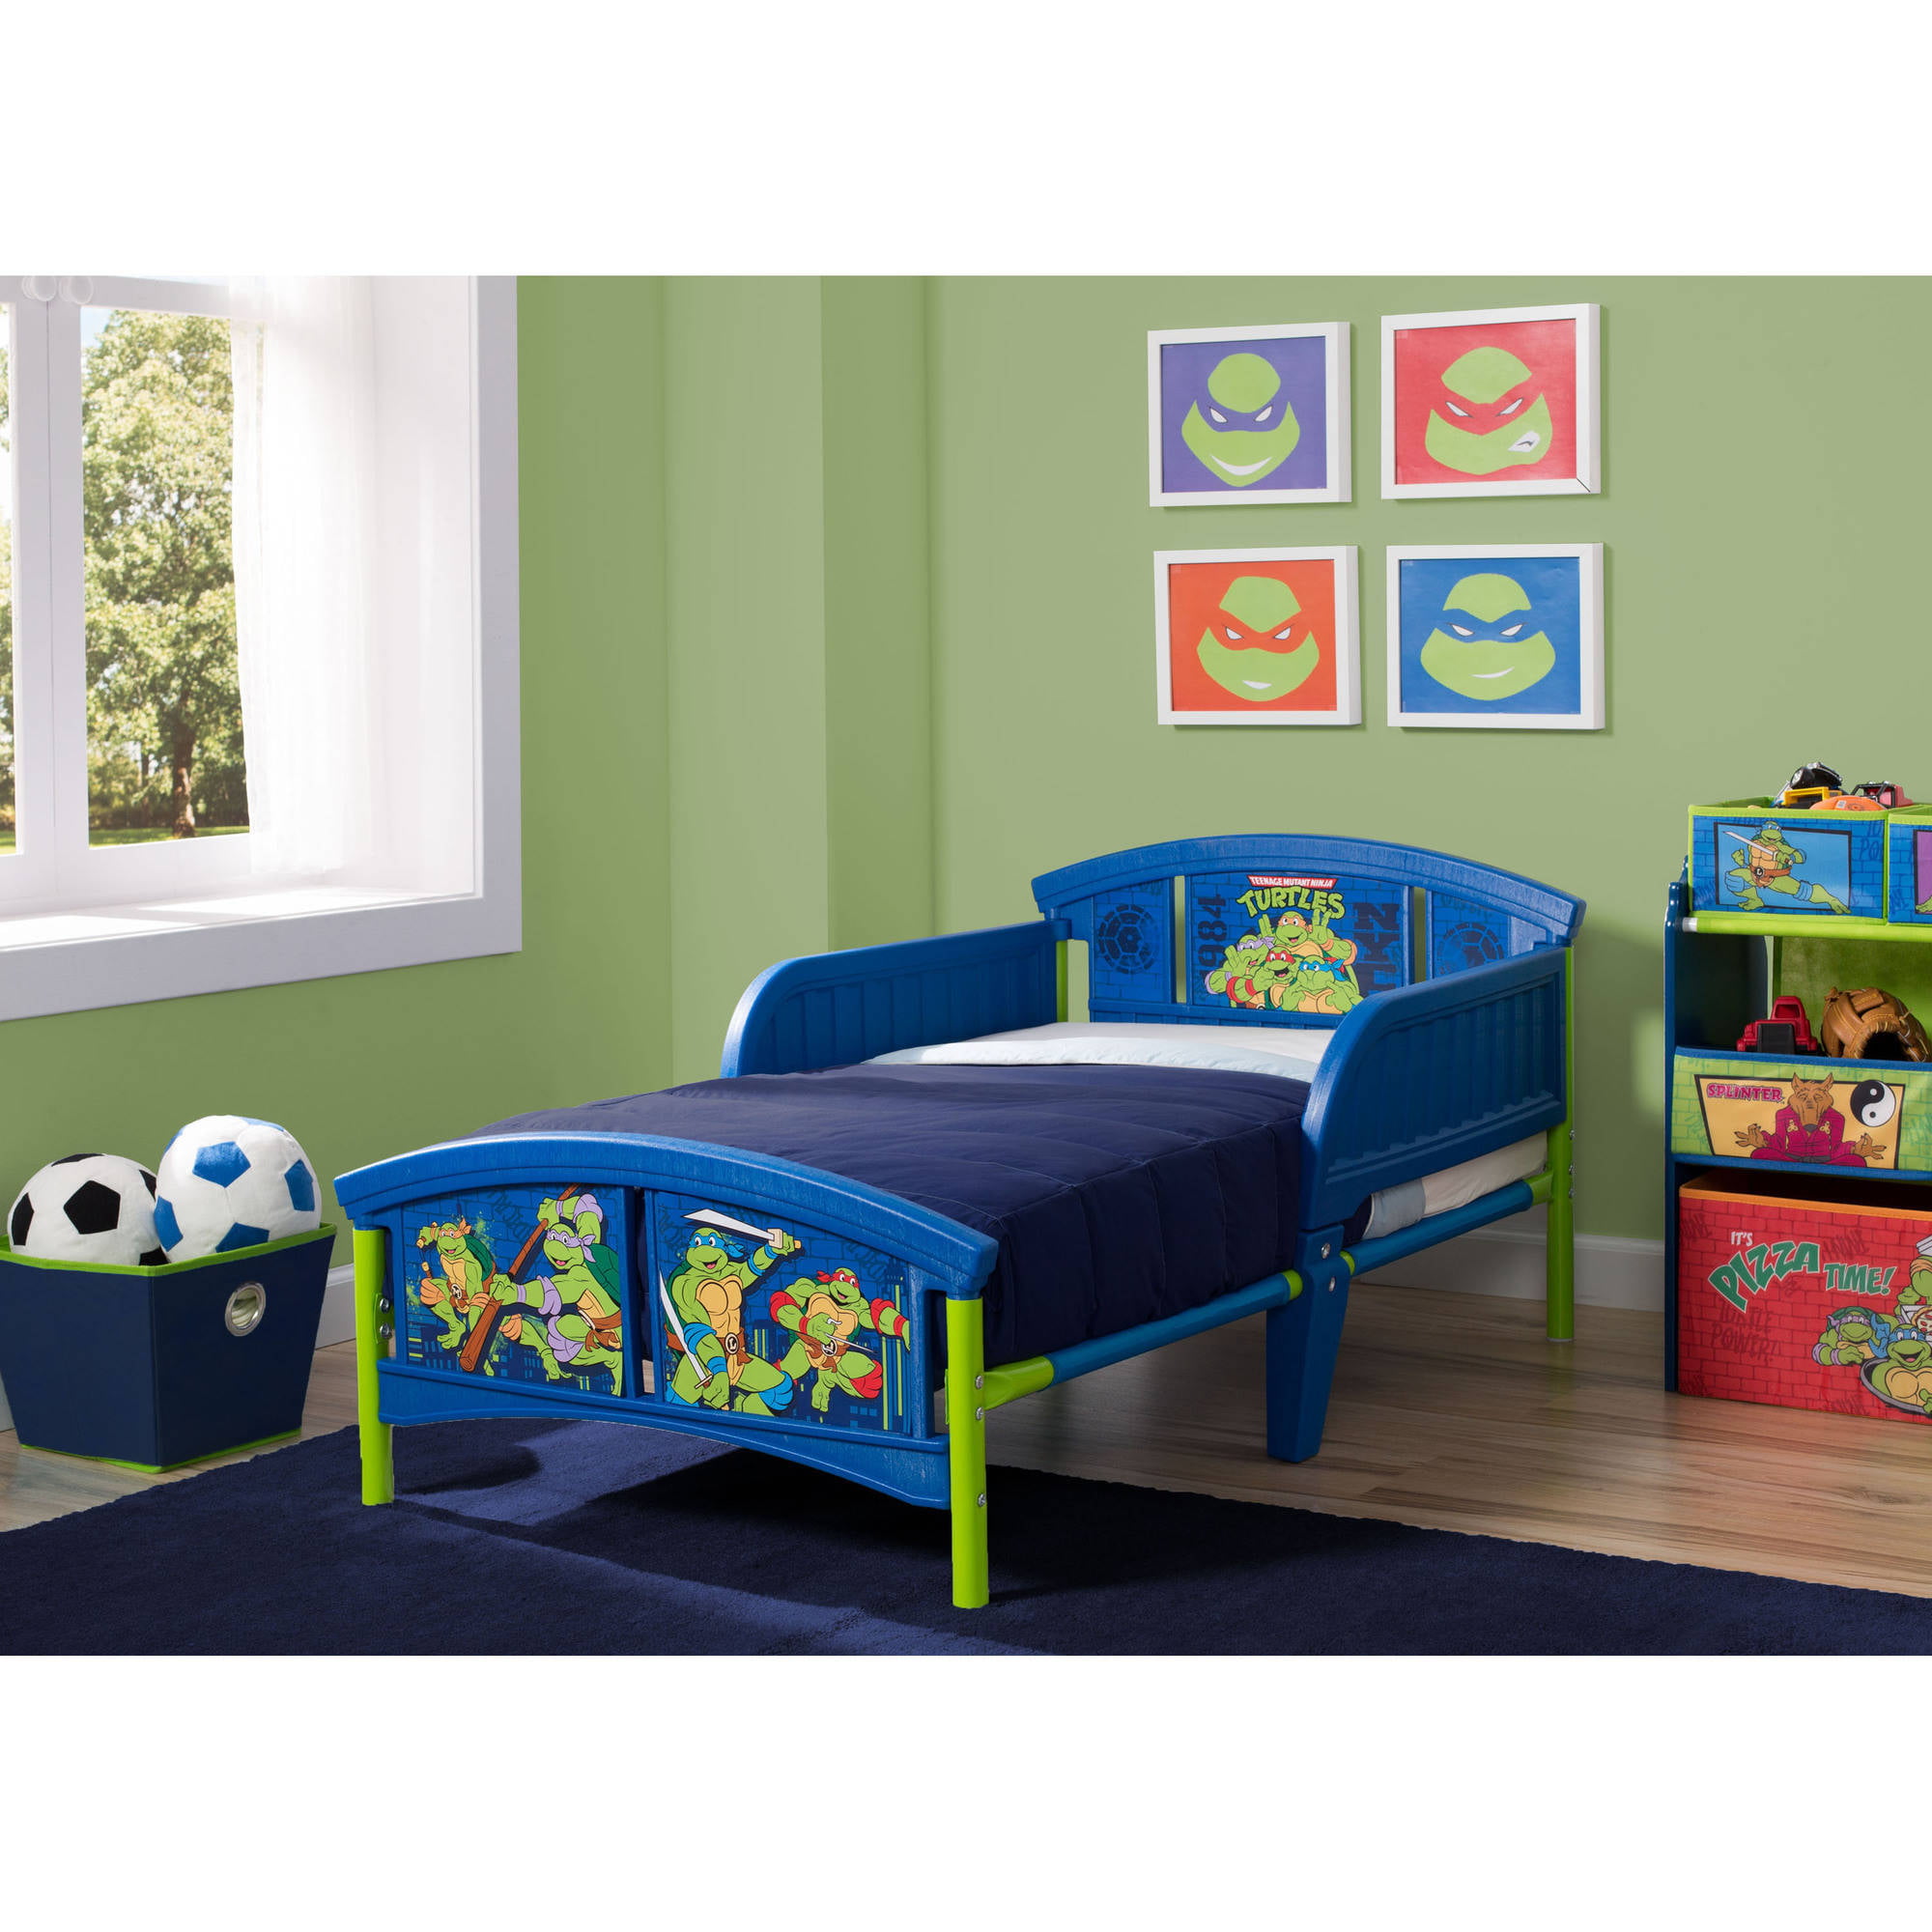 Home Furniture Diy Delta Children Ninja Turtle Toddler Bed